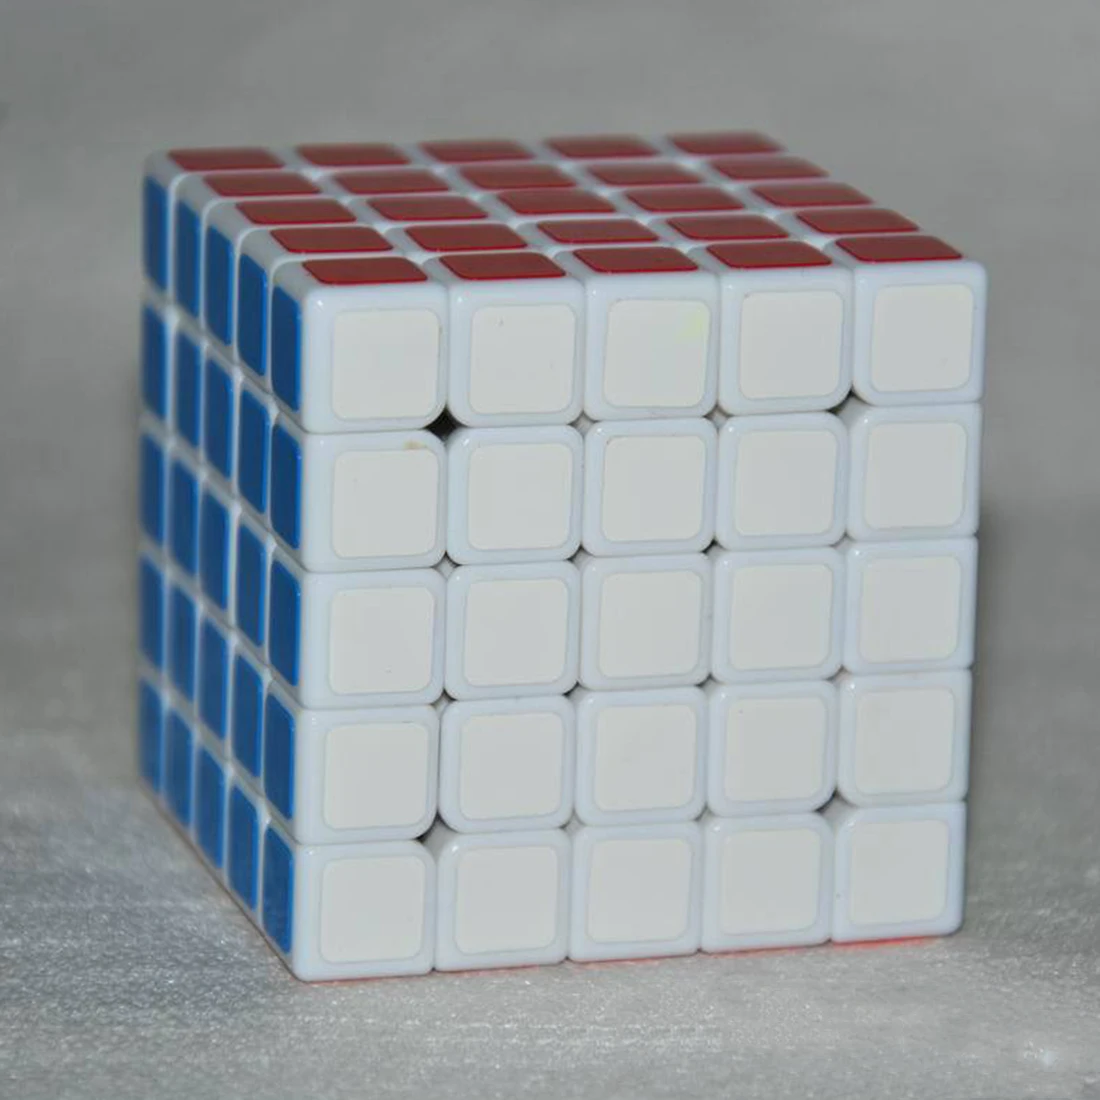 Shengshou Linglong 5x5 квадратная форма Скорость волшебный куб головоломка для детей детские развивающие игрушки